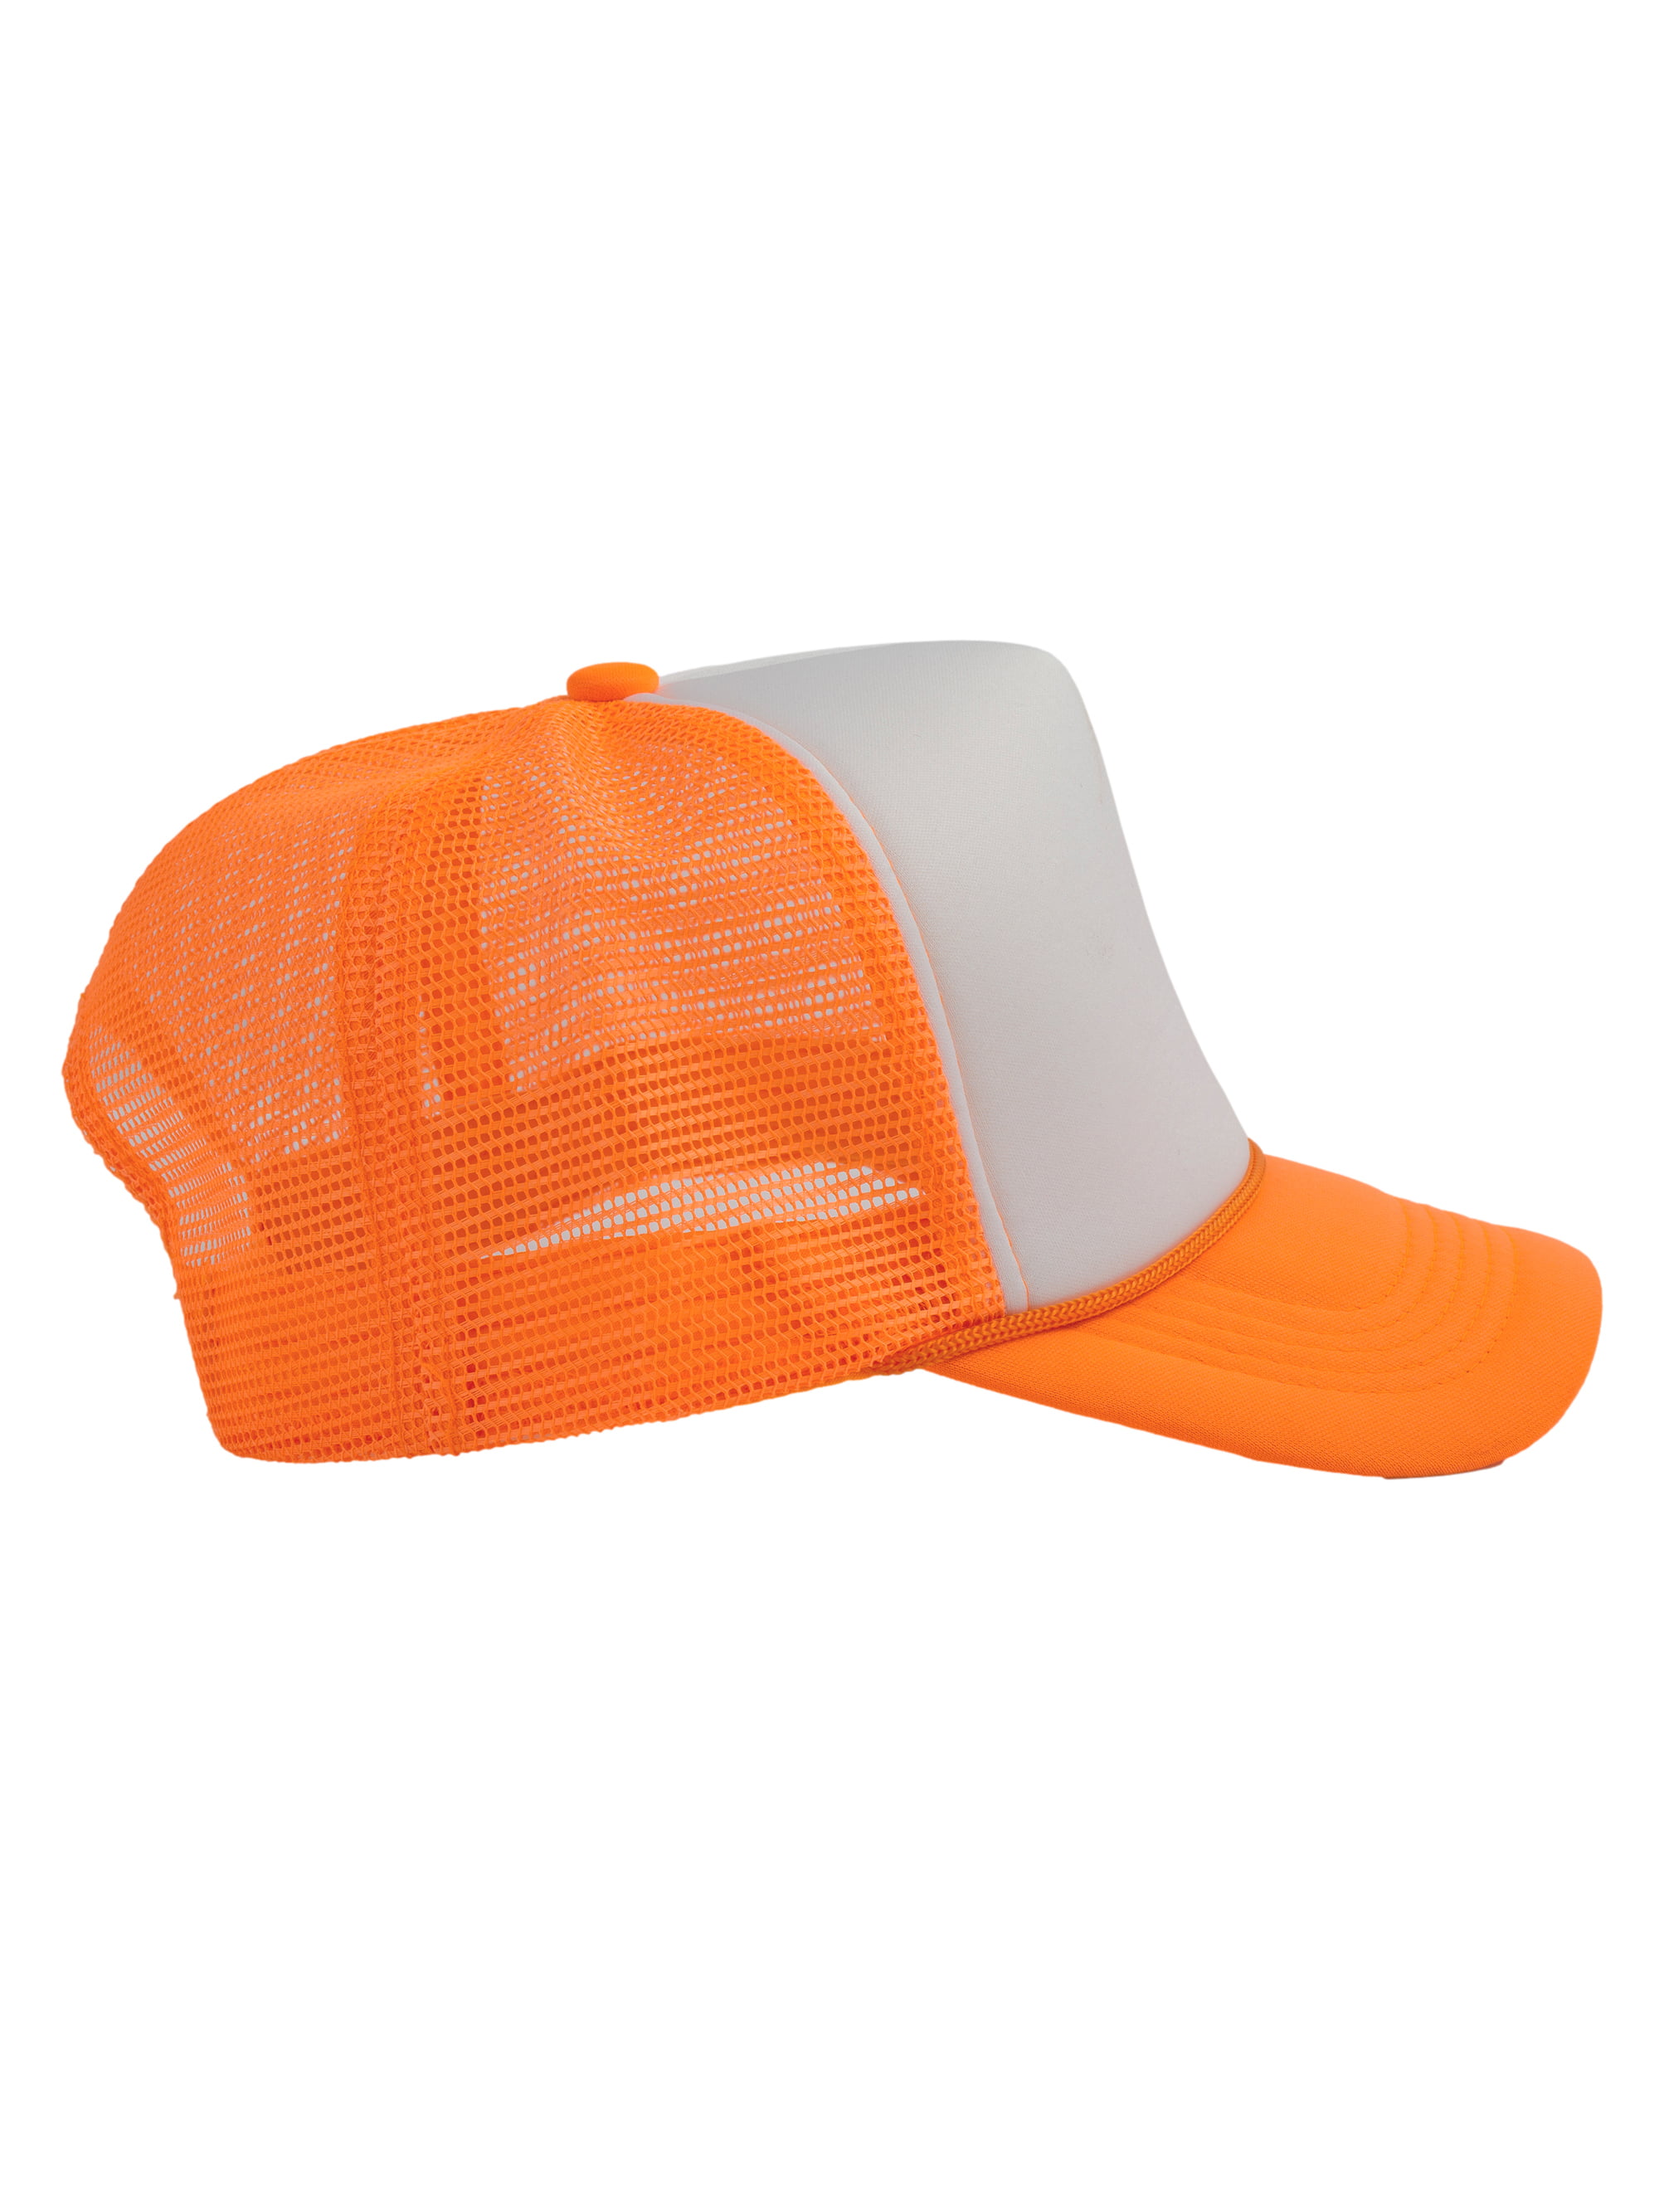 Top Headwear Blank Trucker Hat - Mens Trucker Hats Foam Mesh Snapback White/Neon  Orange